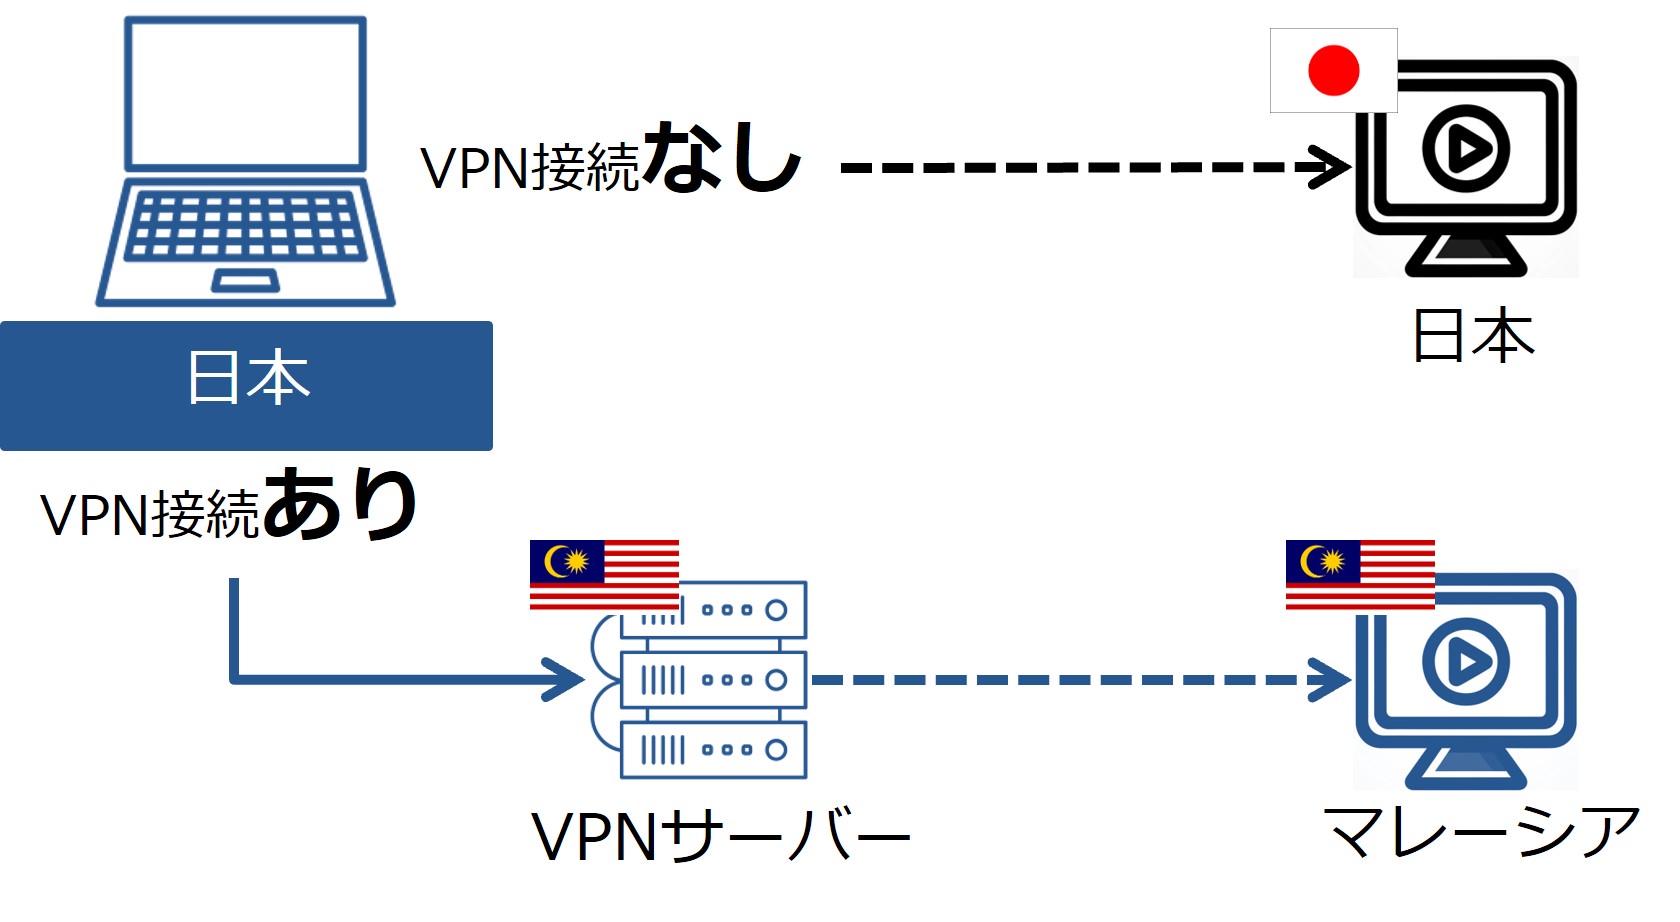 マレーシアのVPNサーバーに接続した場合